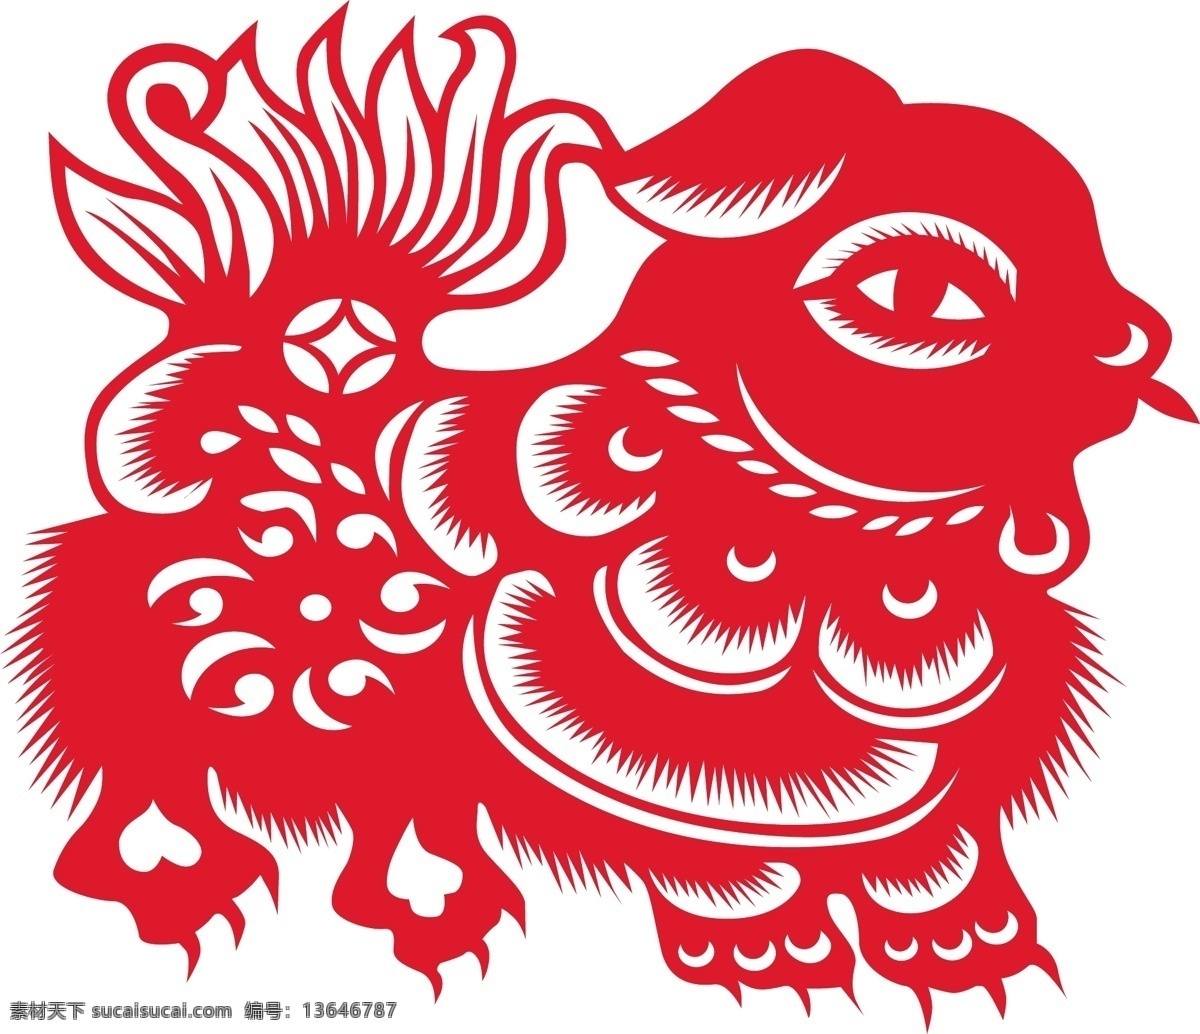 小狗剪纸 传统剪纸 动物 传统 剪纸 动物剪纸 窗花 民俗 中国剪纸 戌狗 文化艺术 传统文化